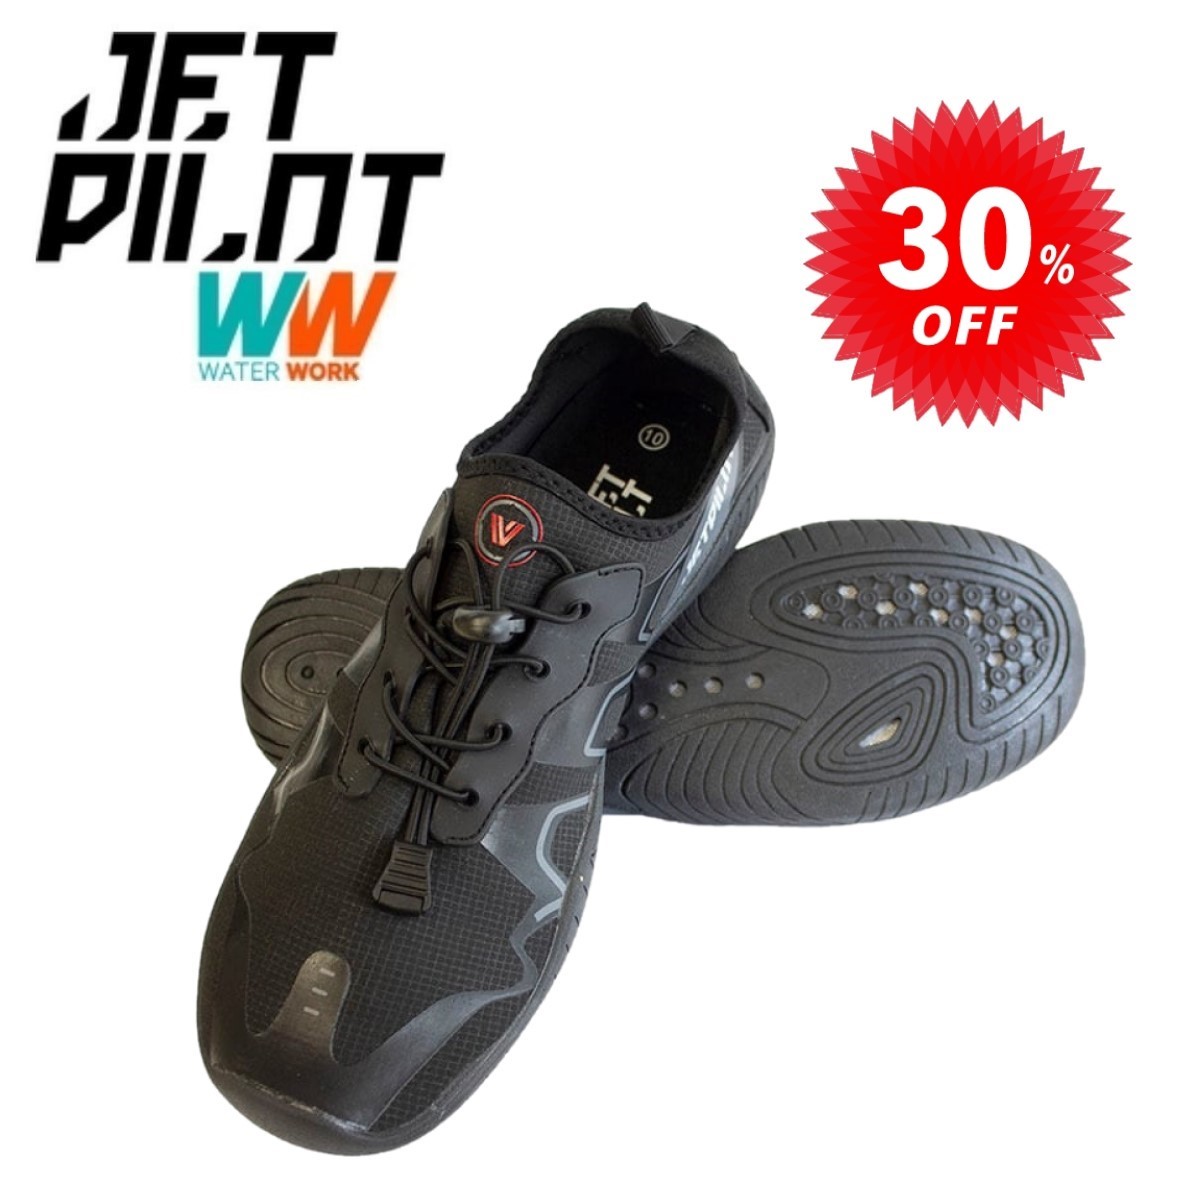  jet Pilot JETPILOT морской обувь распродажа 30% off венчурный Explorer обувь JA20401 9 дюймовый (28~28.5cm)